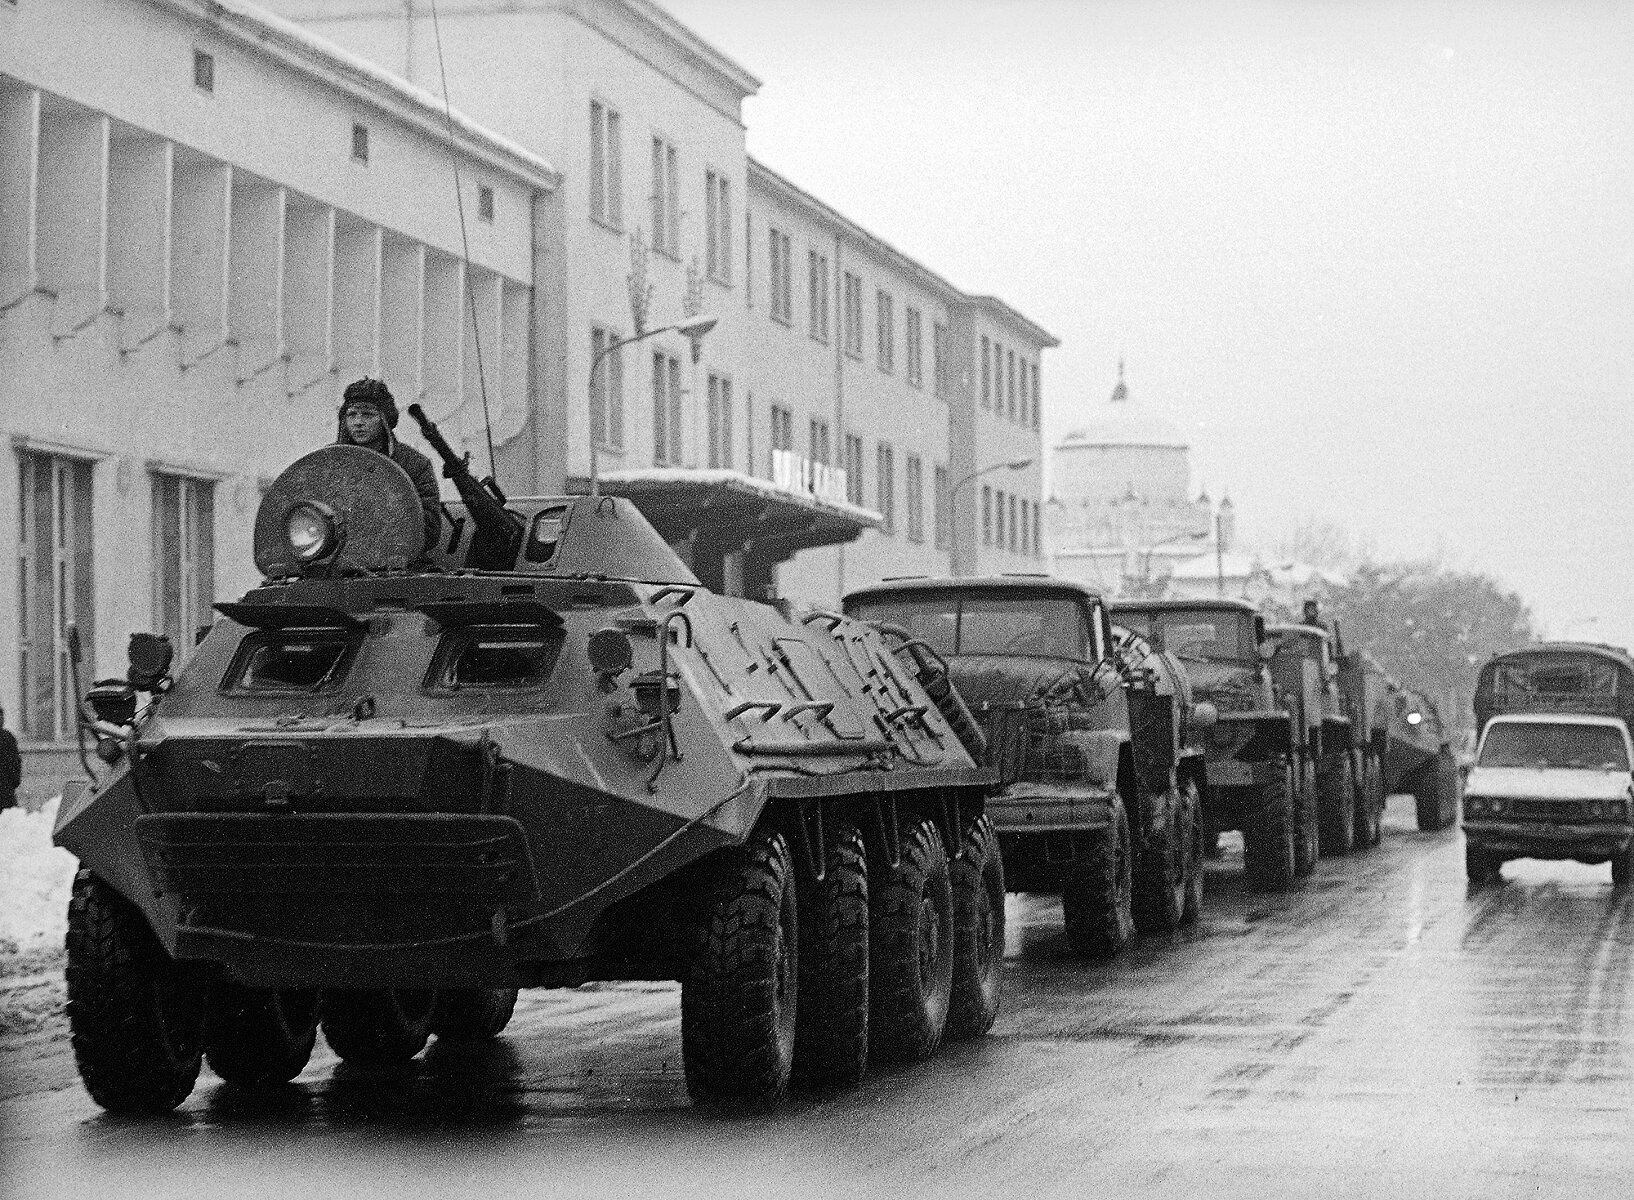 <p>Колонна советской техники движется в потоке гражданских машин в центре Кабула, 9 февраля 1980 года</p>